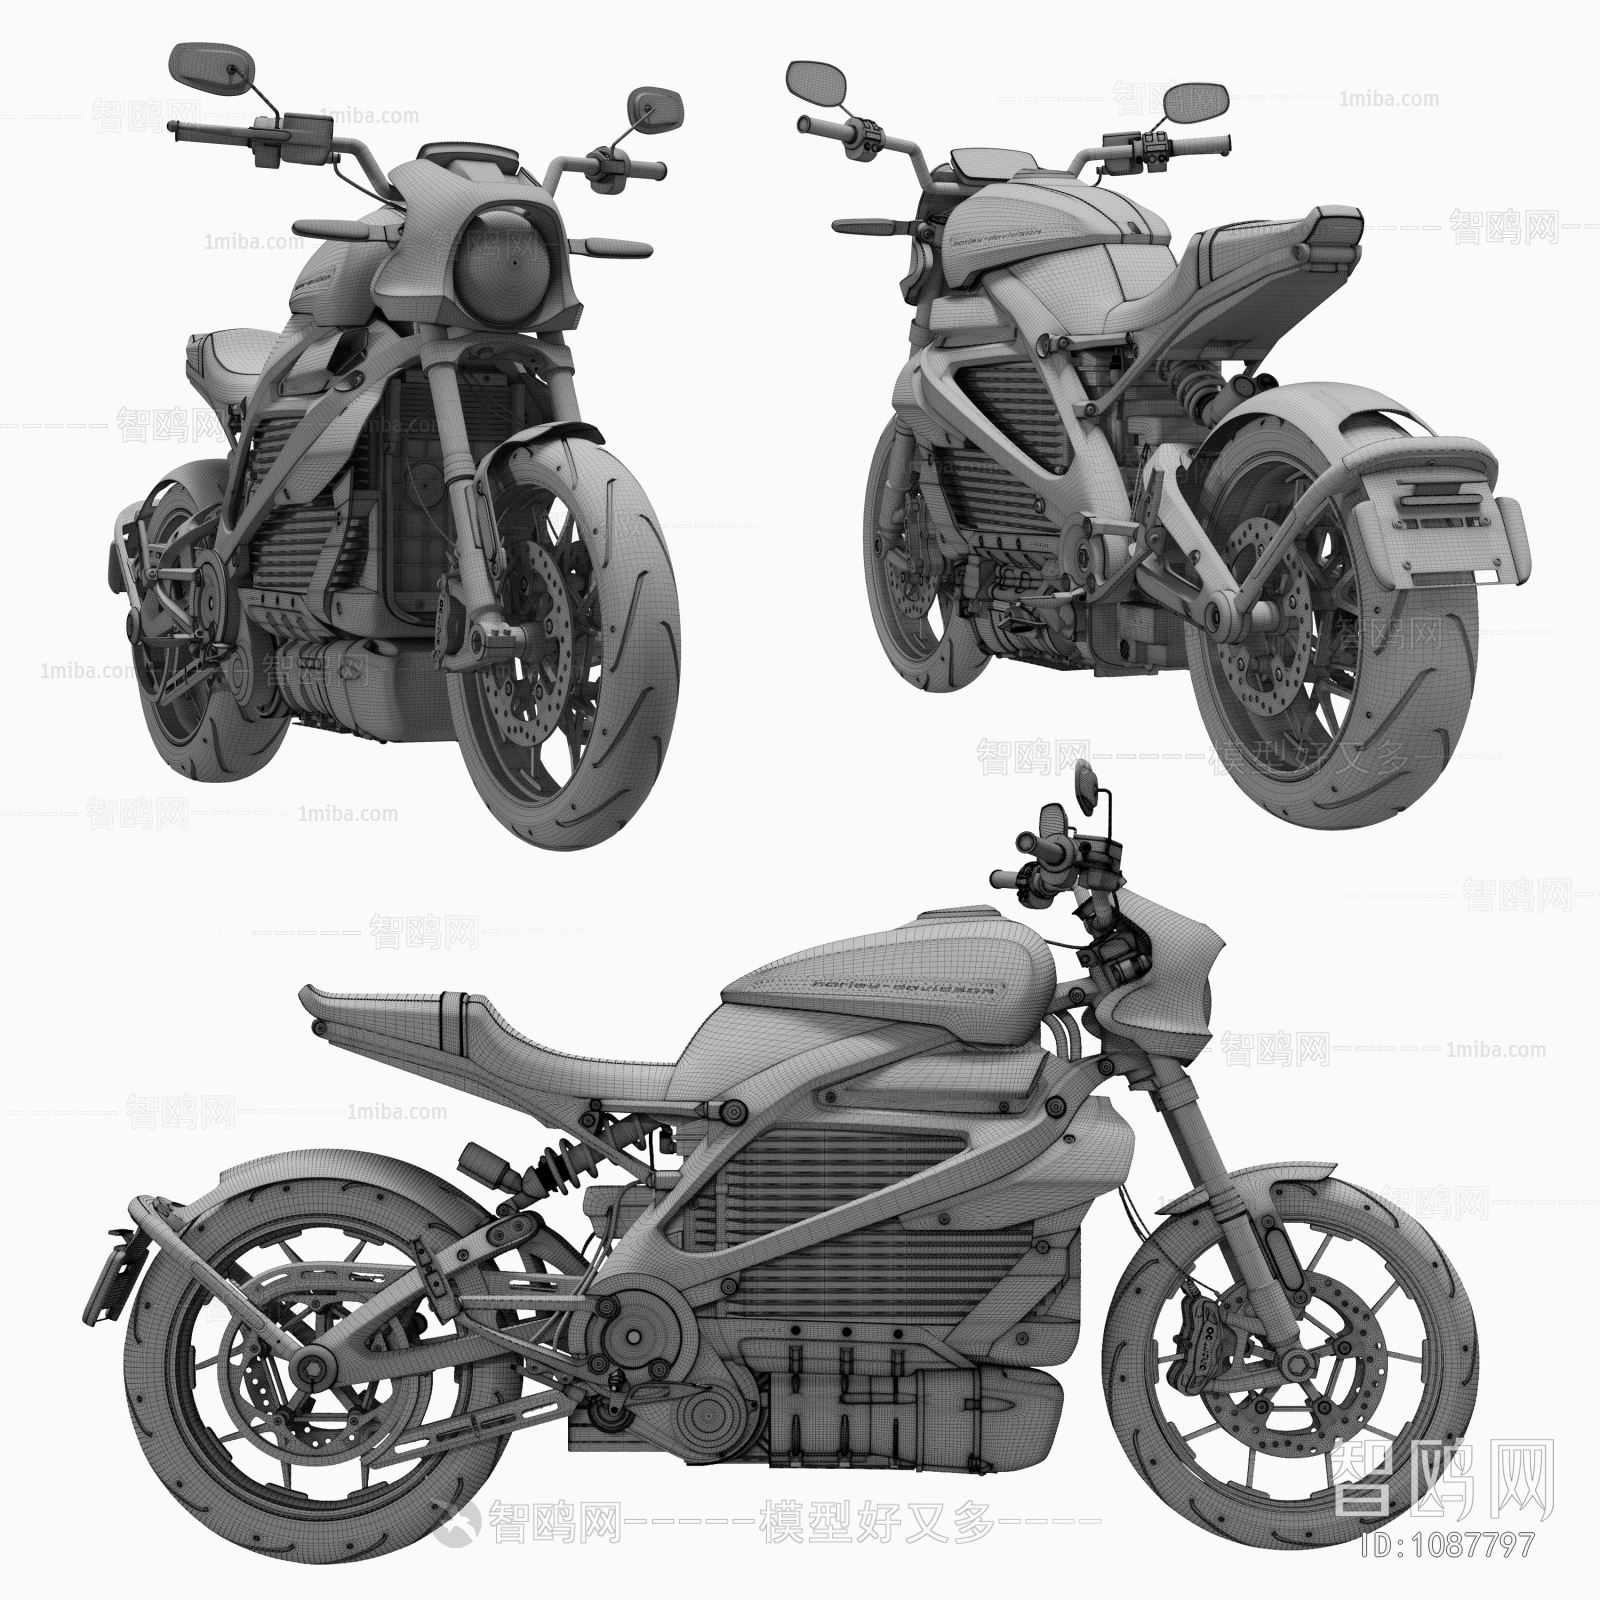 Modern Motorcycle 3D Model Download - Model ID.955439098 | 1miba